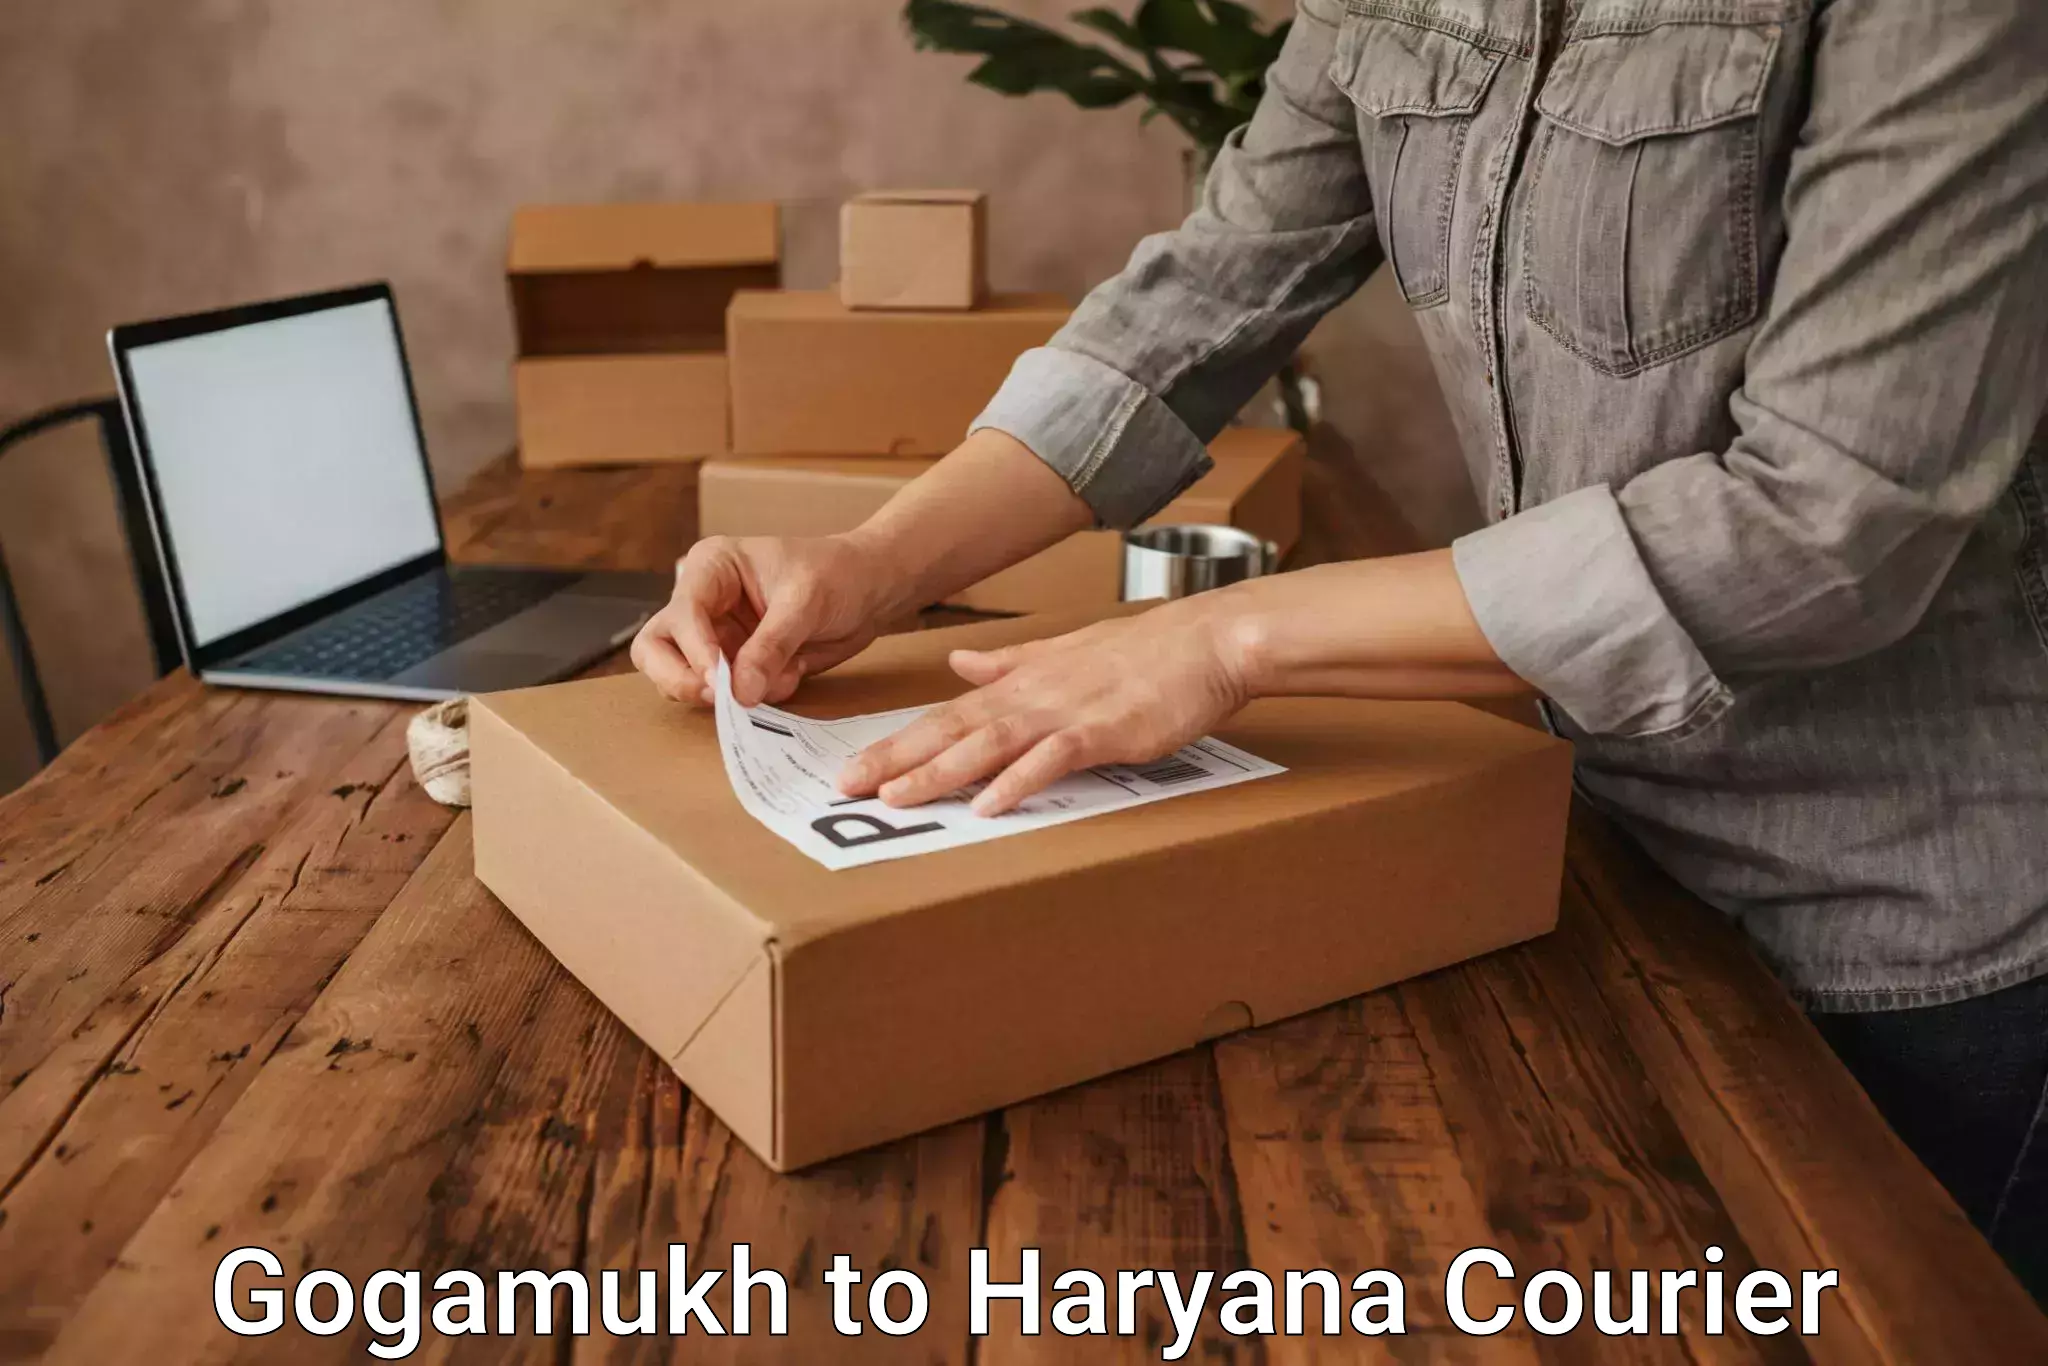 Custom courier packaging Gogamukh to Haryana